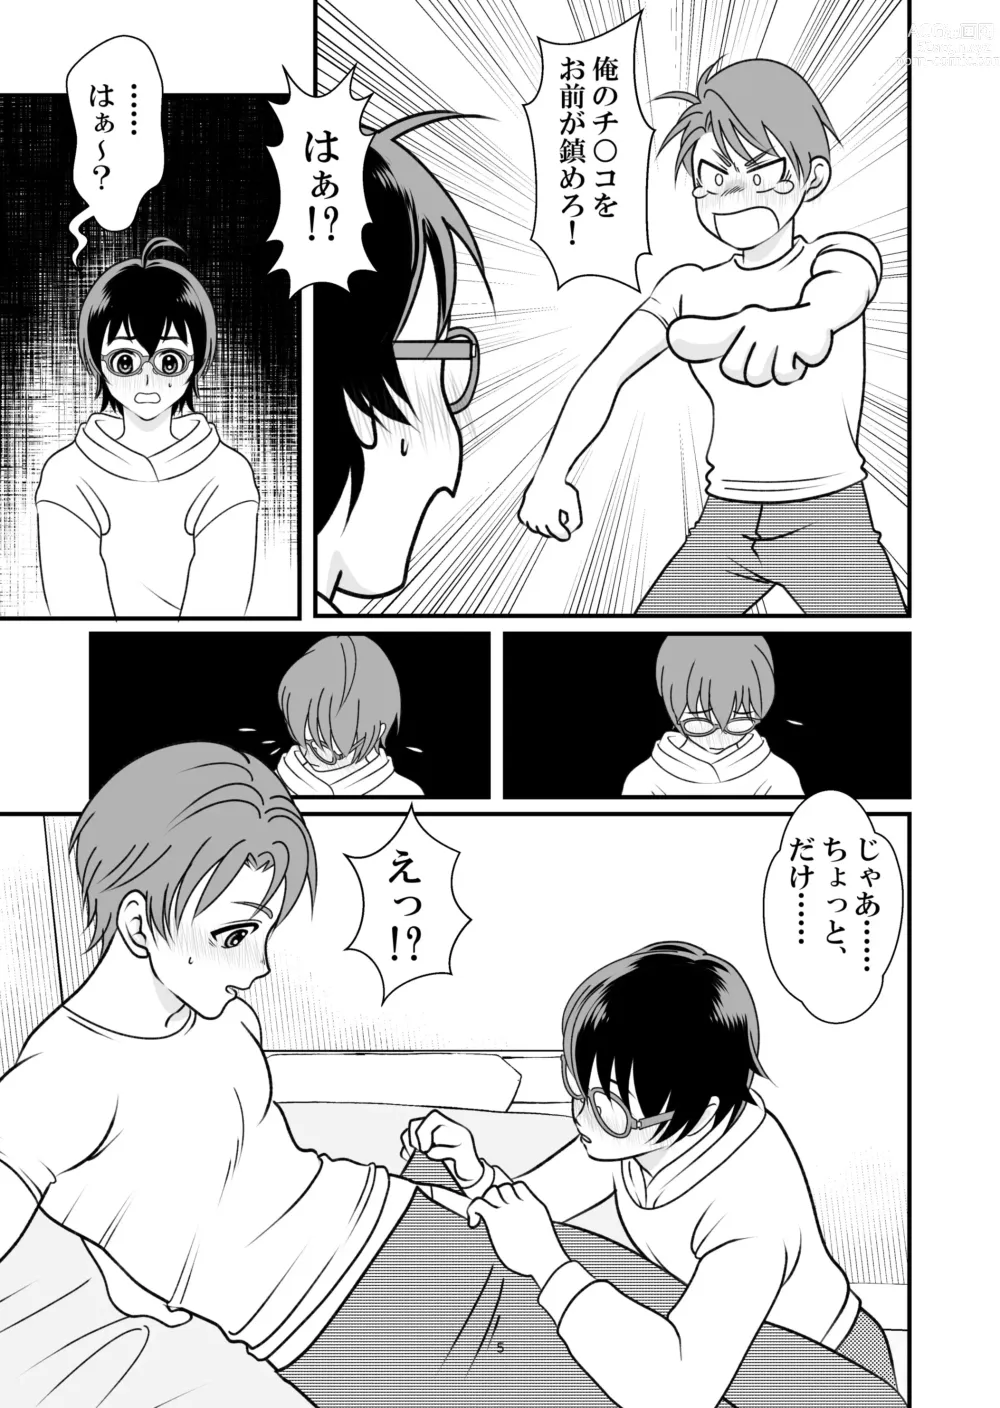 Page 5 of doujinshi Ai no Sorairo 1